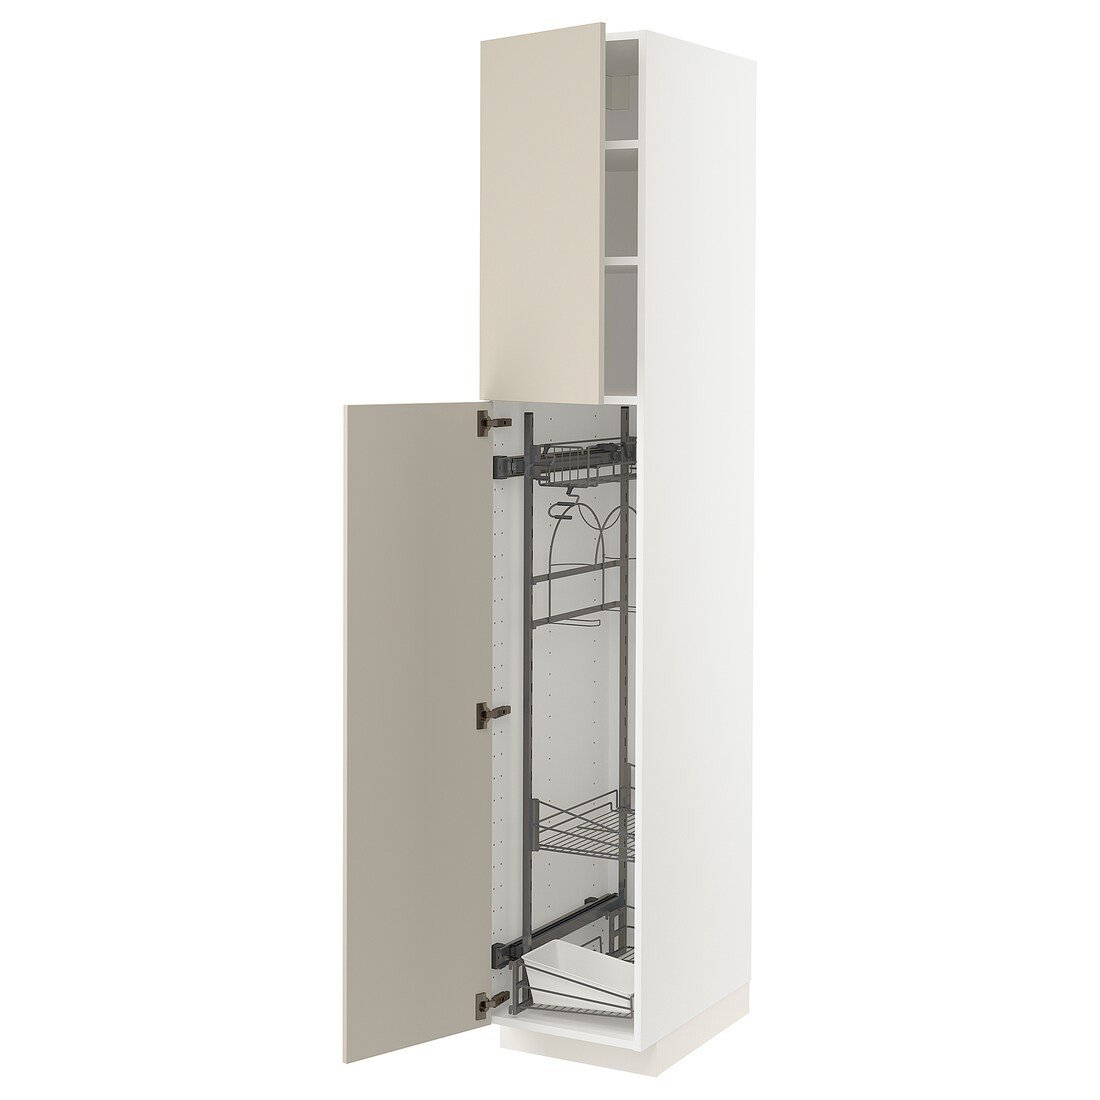 METOD МЕТОД Висока шафа з відділенням для аксесуарів для прибирання, білий / Havstorp бежевий, 40x60x220 см